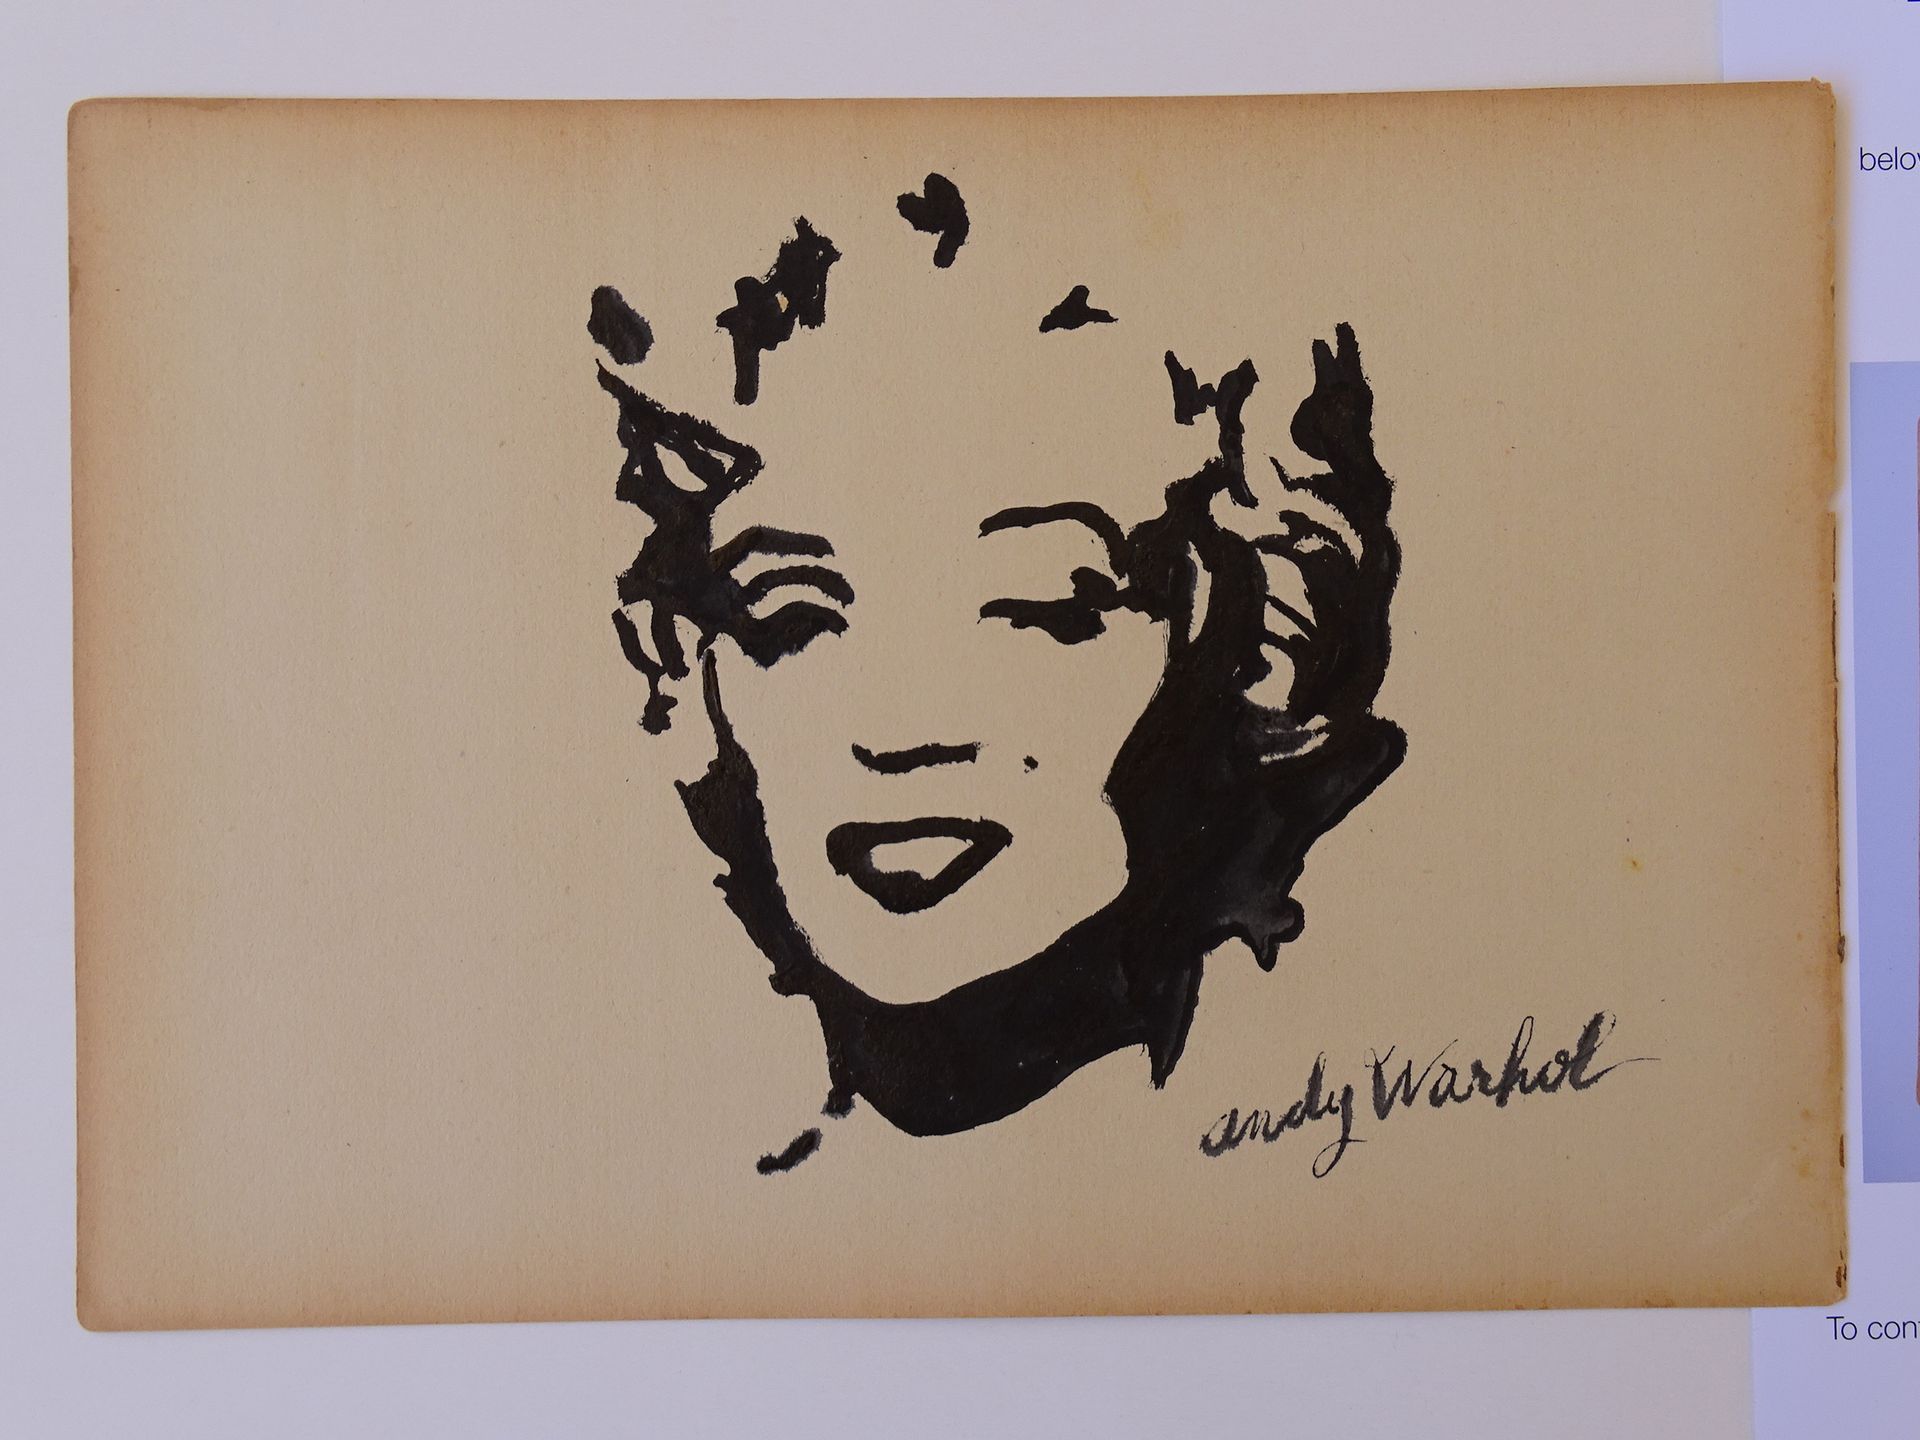 Andy Warhol 安迪-沃霍尔的作品，水墨画，大约27x19厘米，状况良好。安迪-沃霍尔，是美国视觉艺术家、电影导演和制片人，是被称为流行艺术的视觉艺术运&hellip;